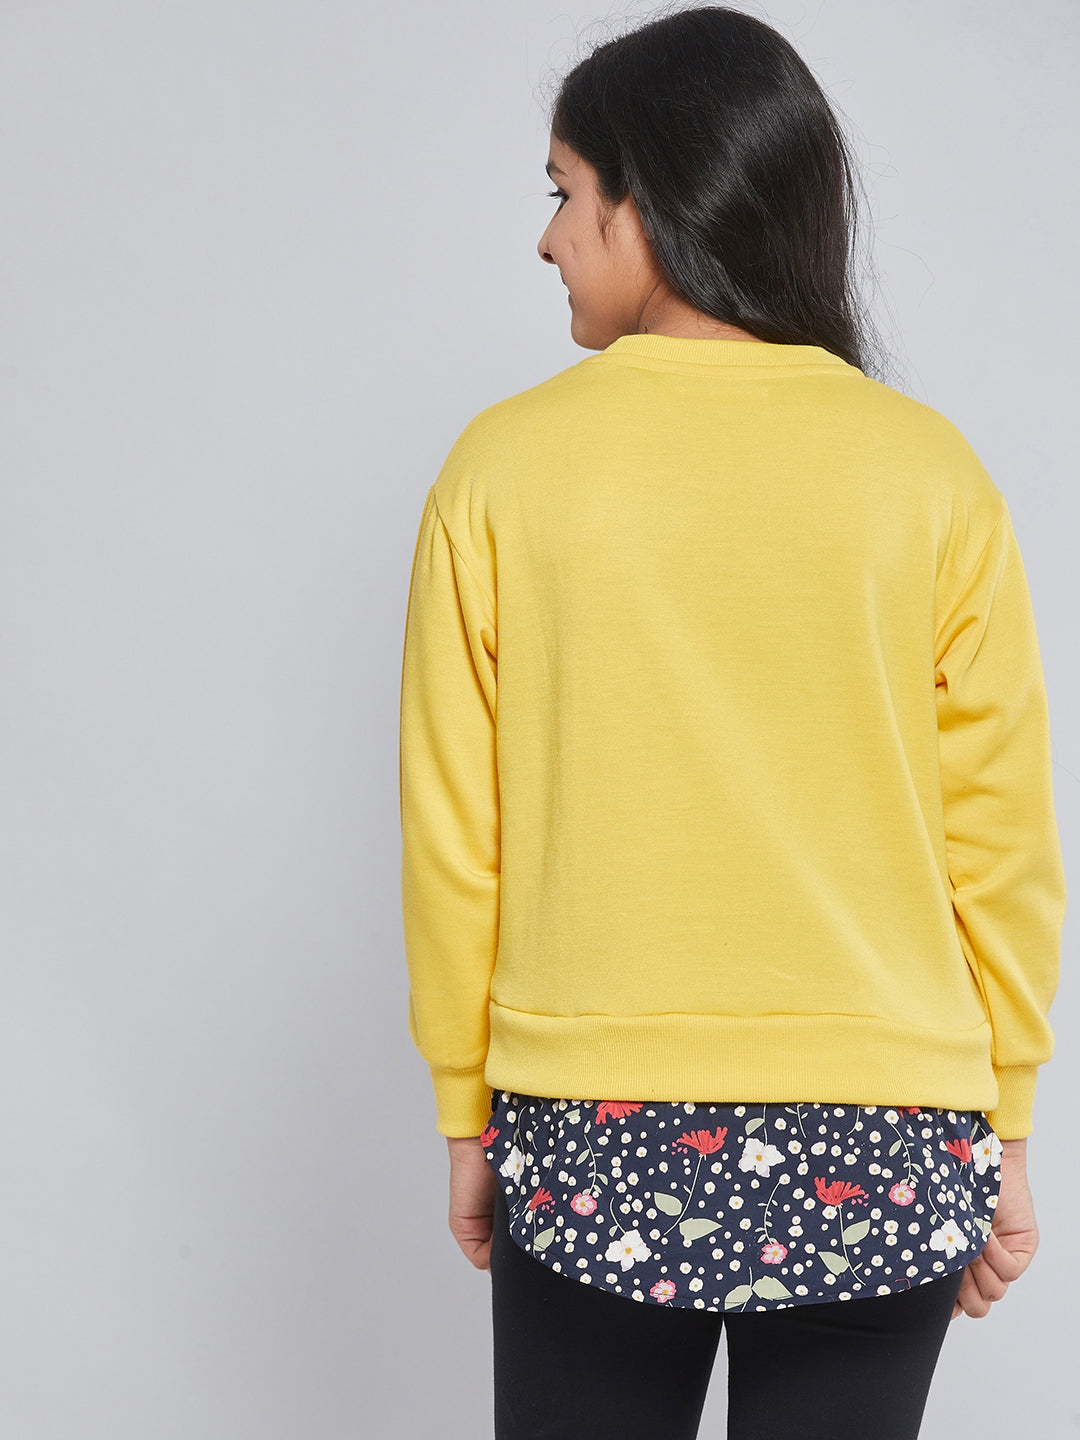 Girls Yellow Fleece Half Shirt Sweatshirt